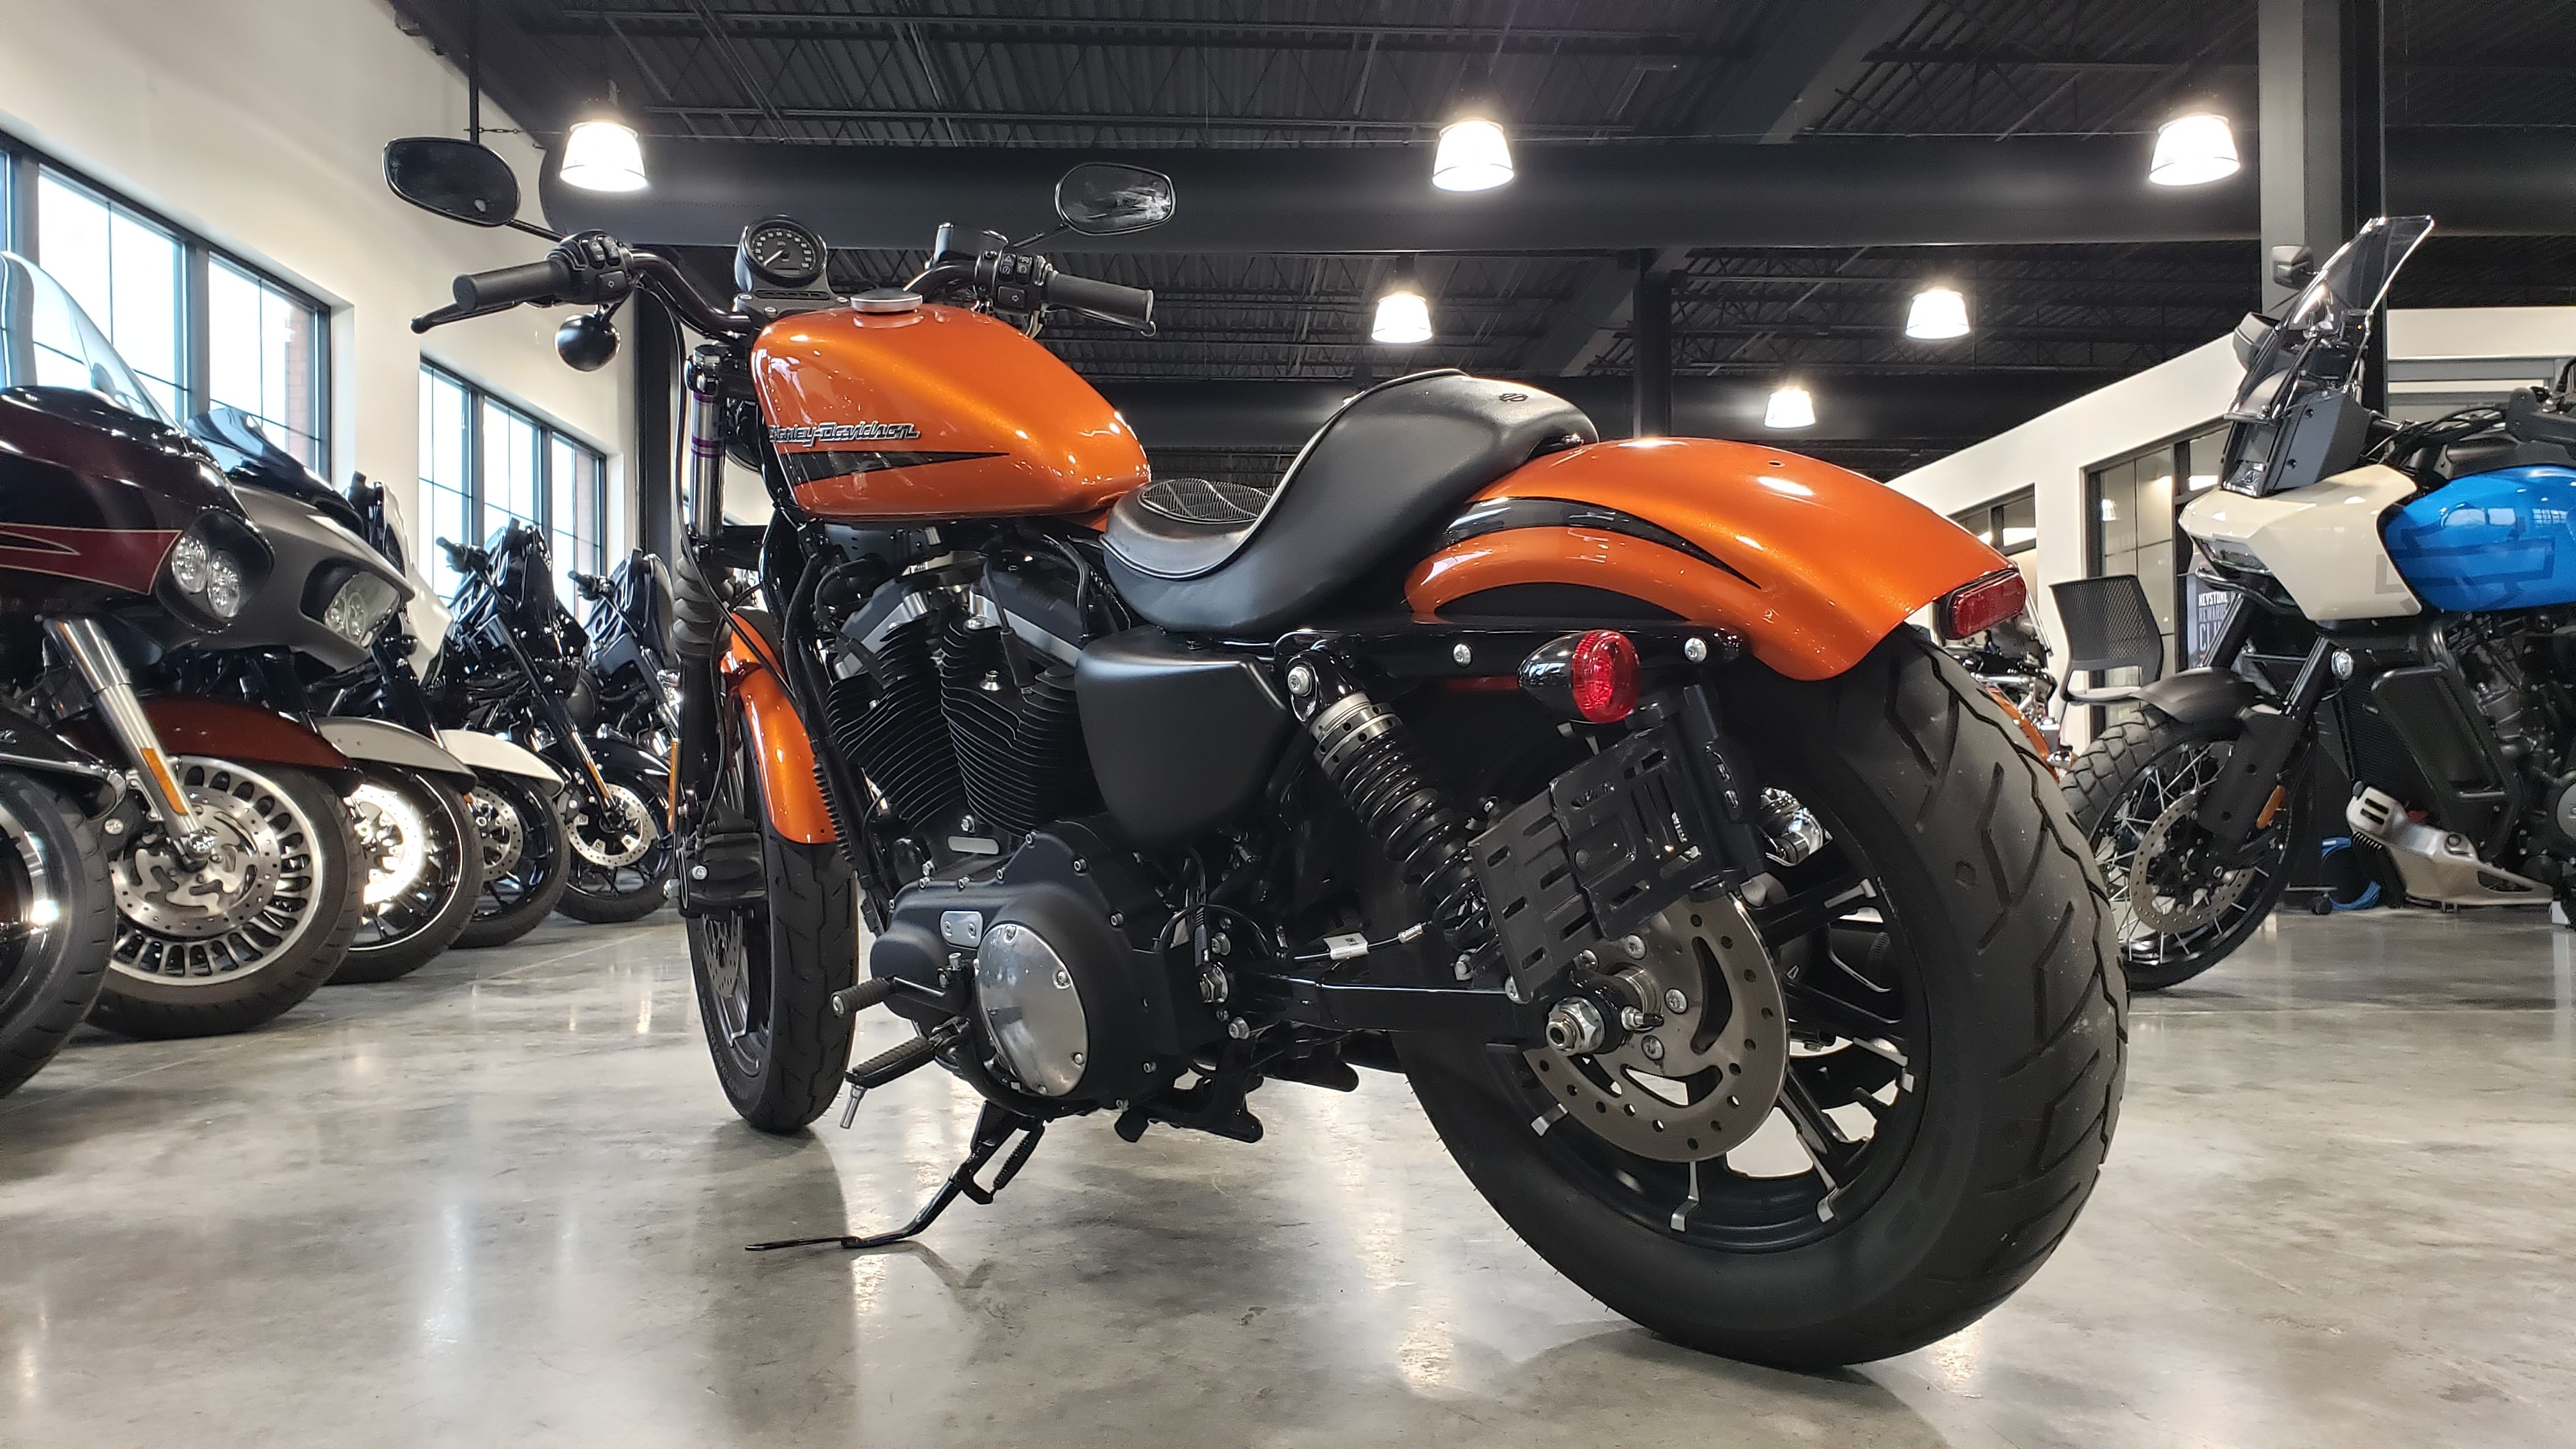 2020 Harley-Davidson Sportster Iron 883 at Keystone Harley-Davidson